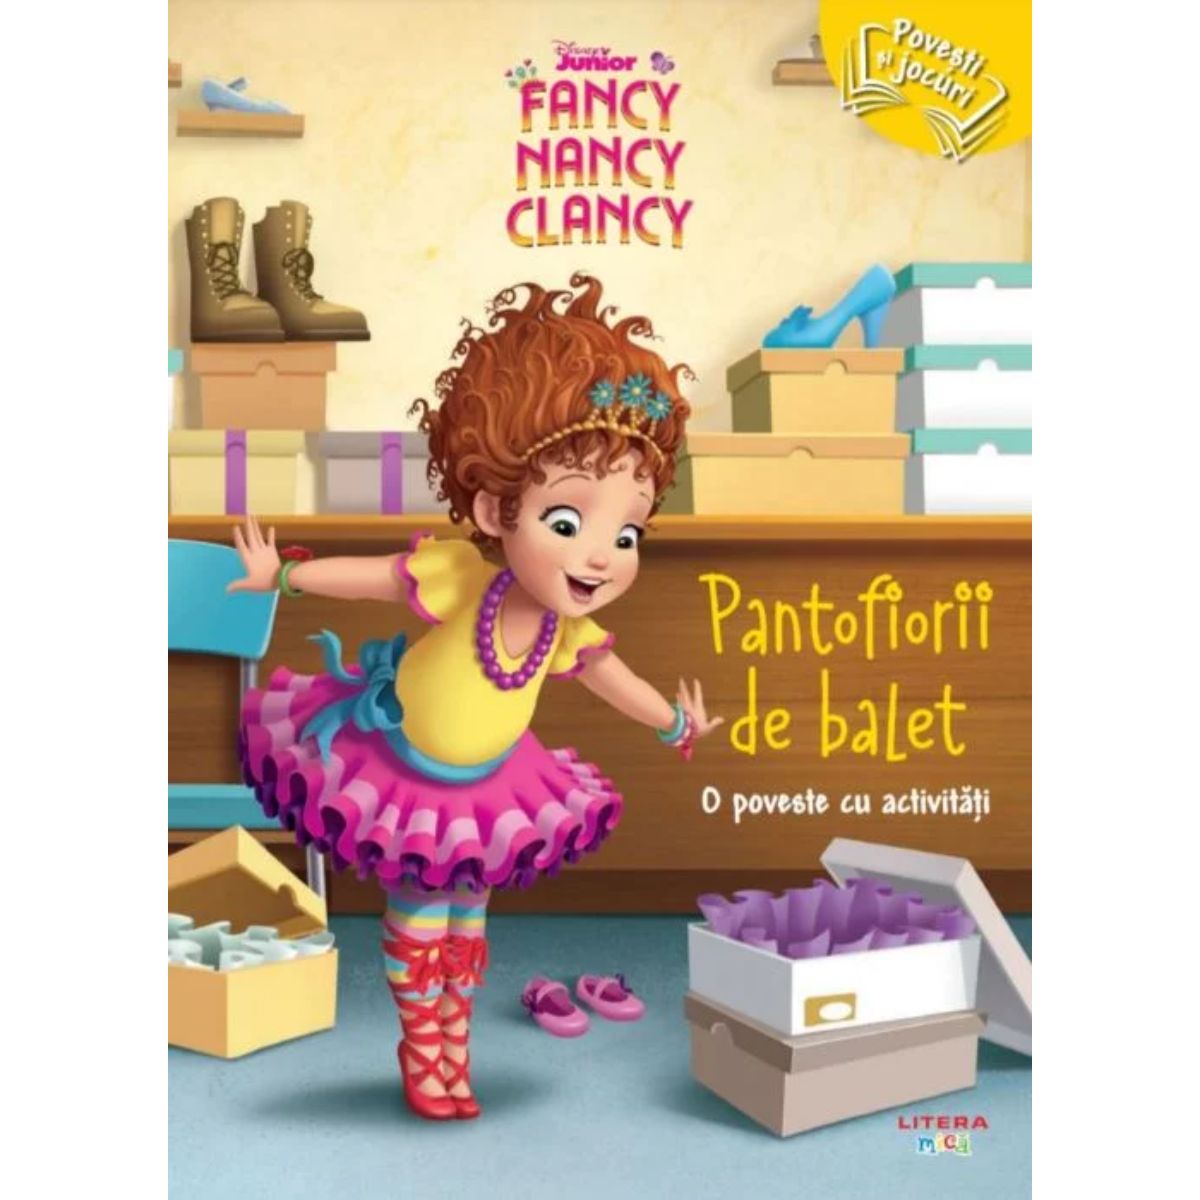 Disney Junior Fancy Nancy Clancy, Pantofiorii de balet Litera